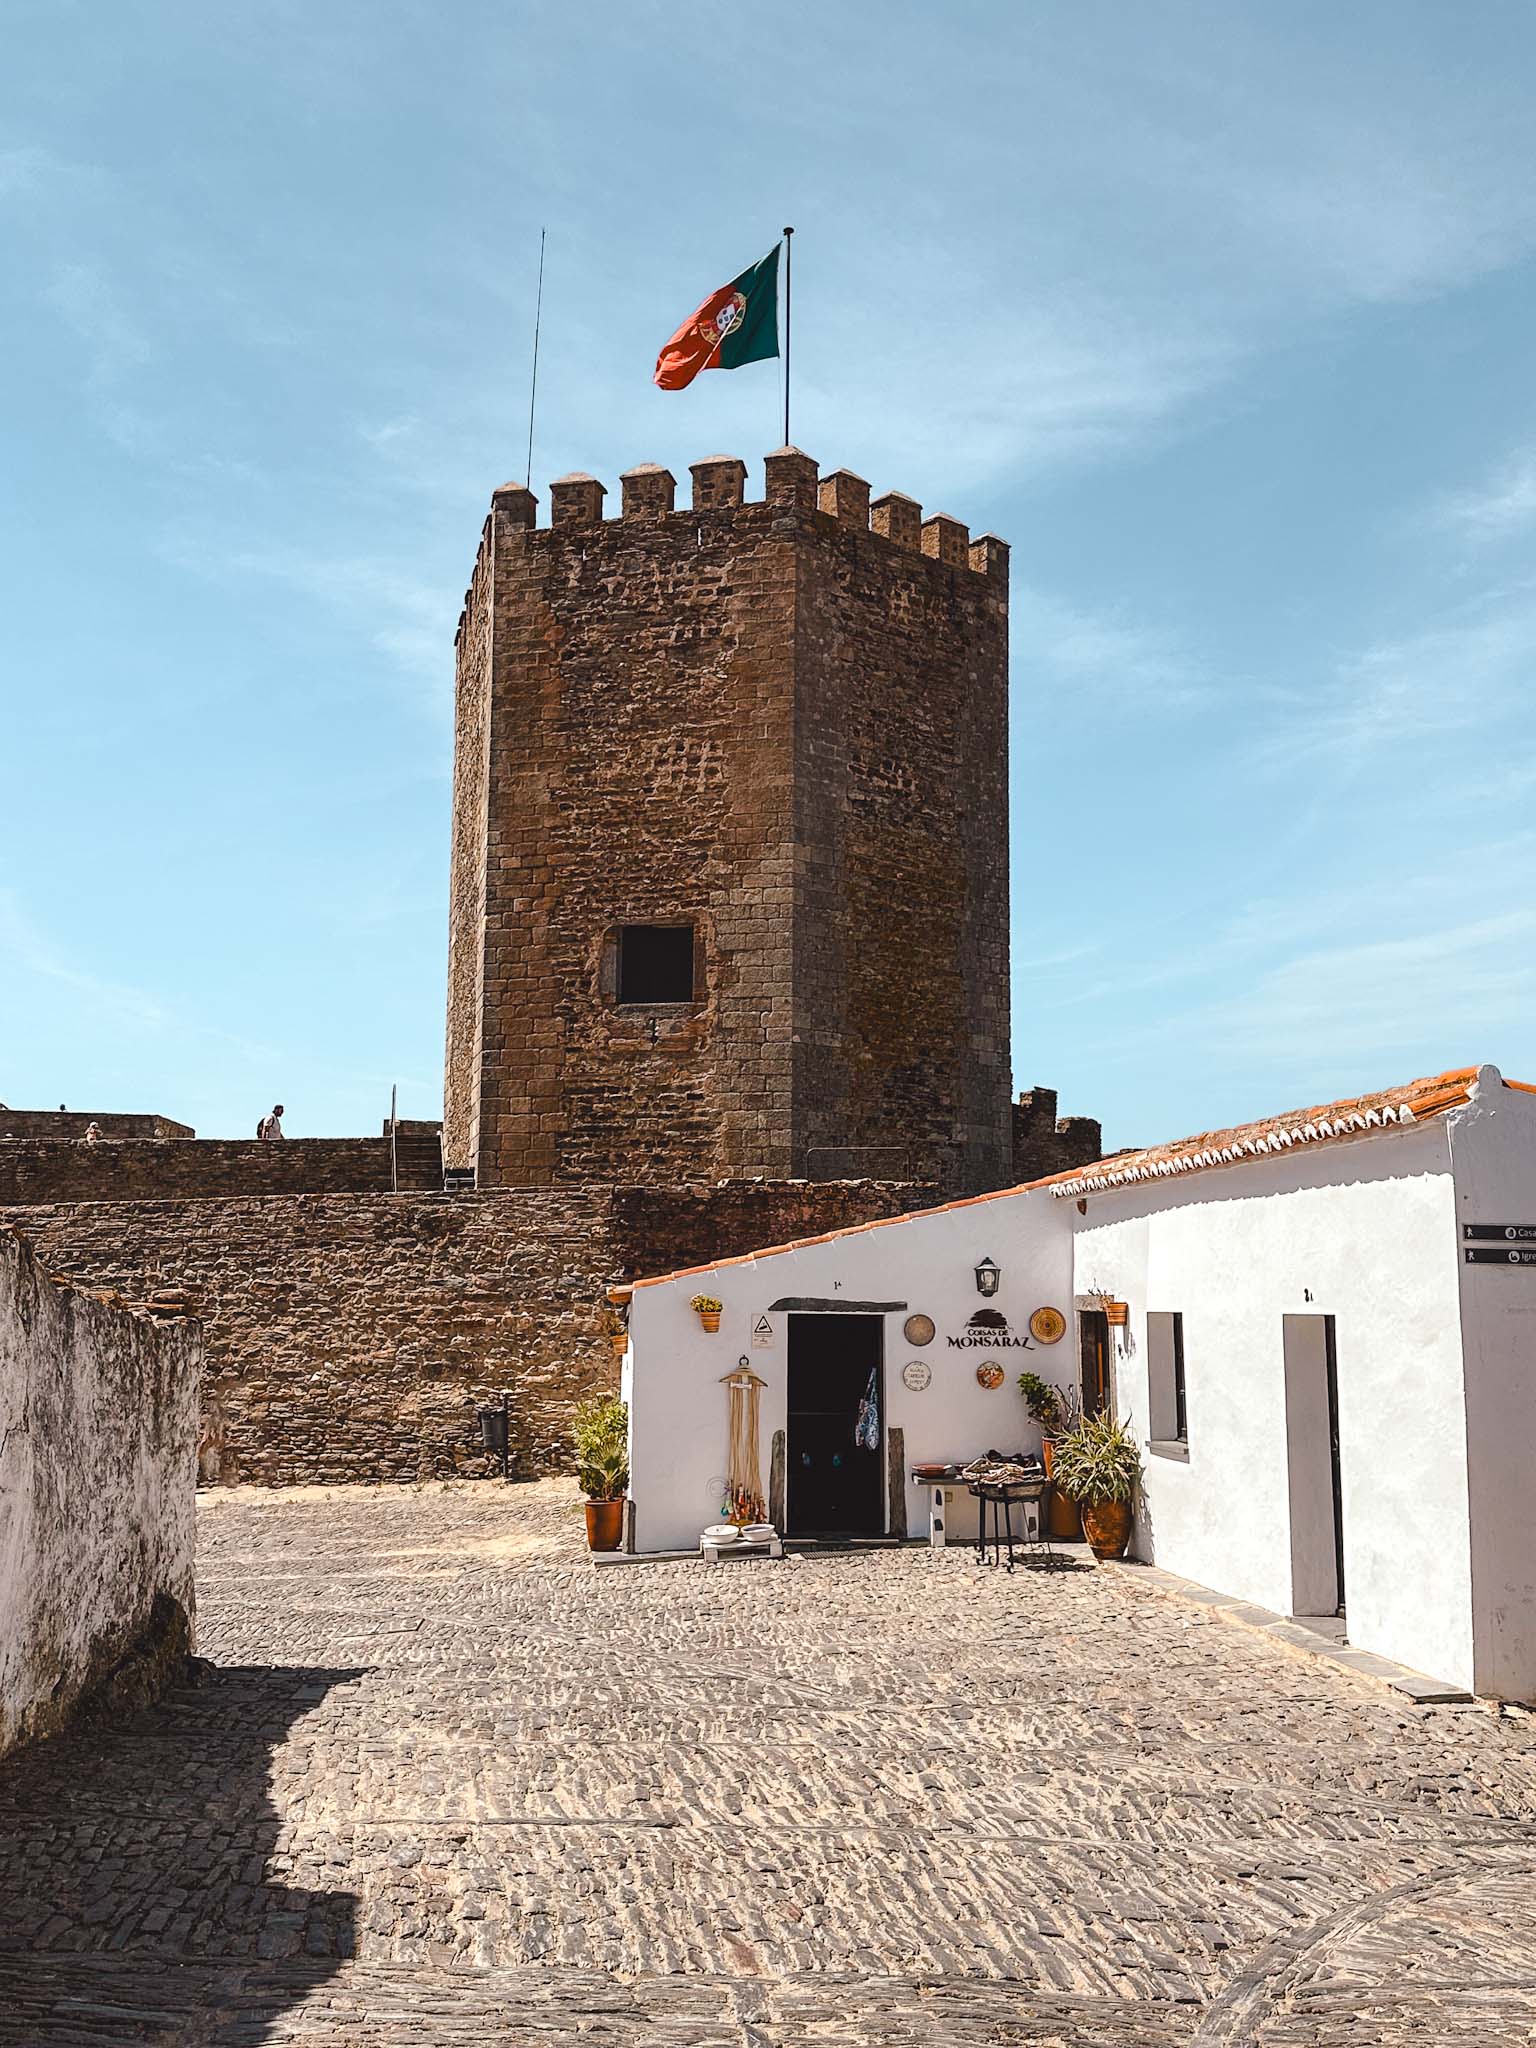 Castelo de Monsaraz - medieval hilltop town in Evora district in Portugal